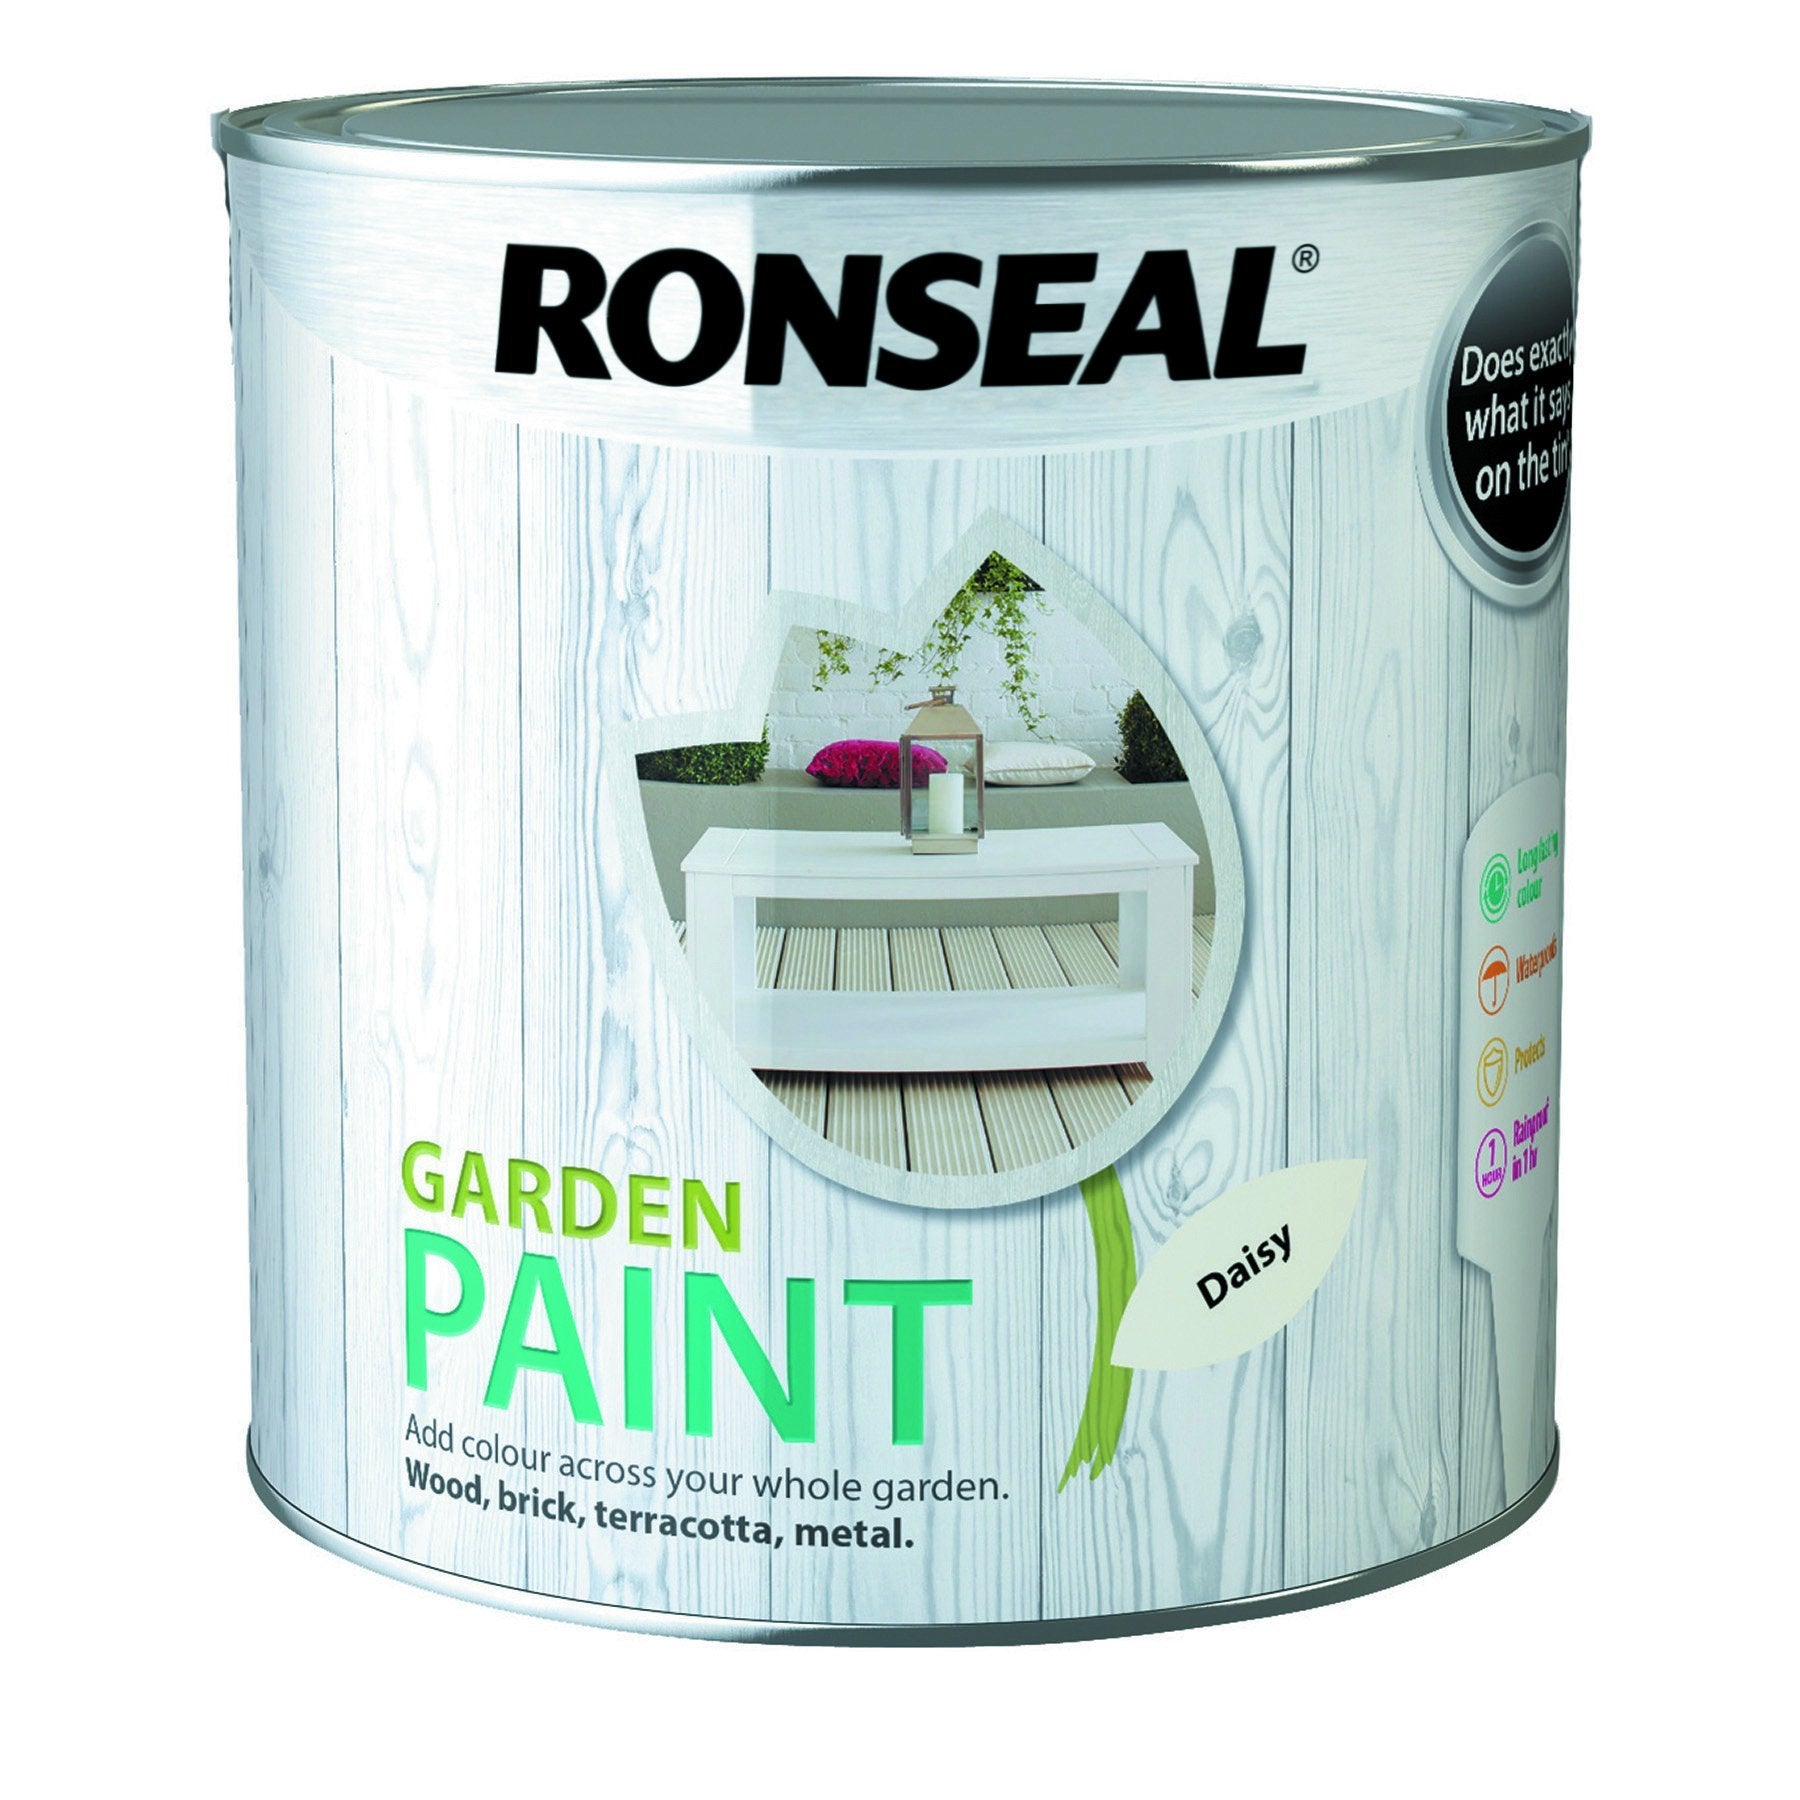 Ronseal-Garden-Paint-daisy-2.5L